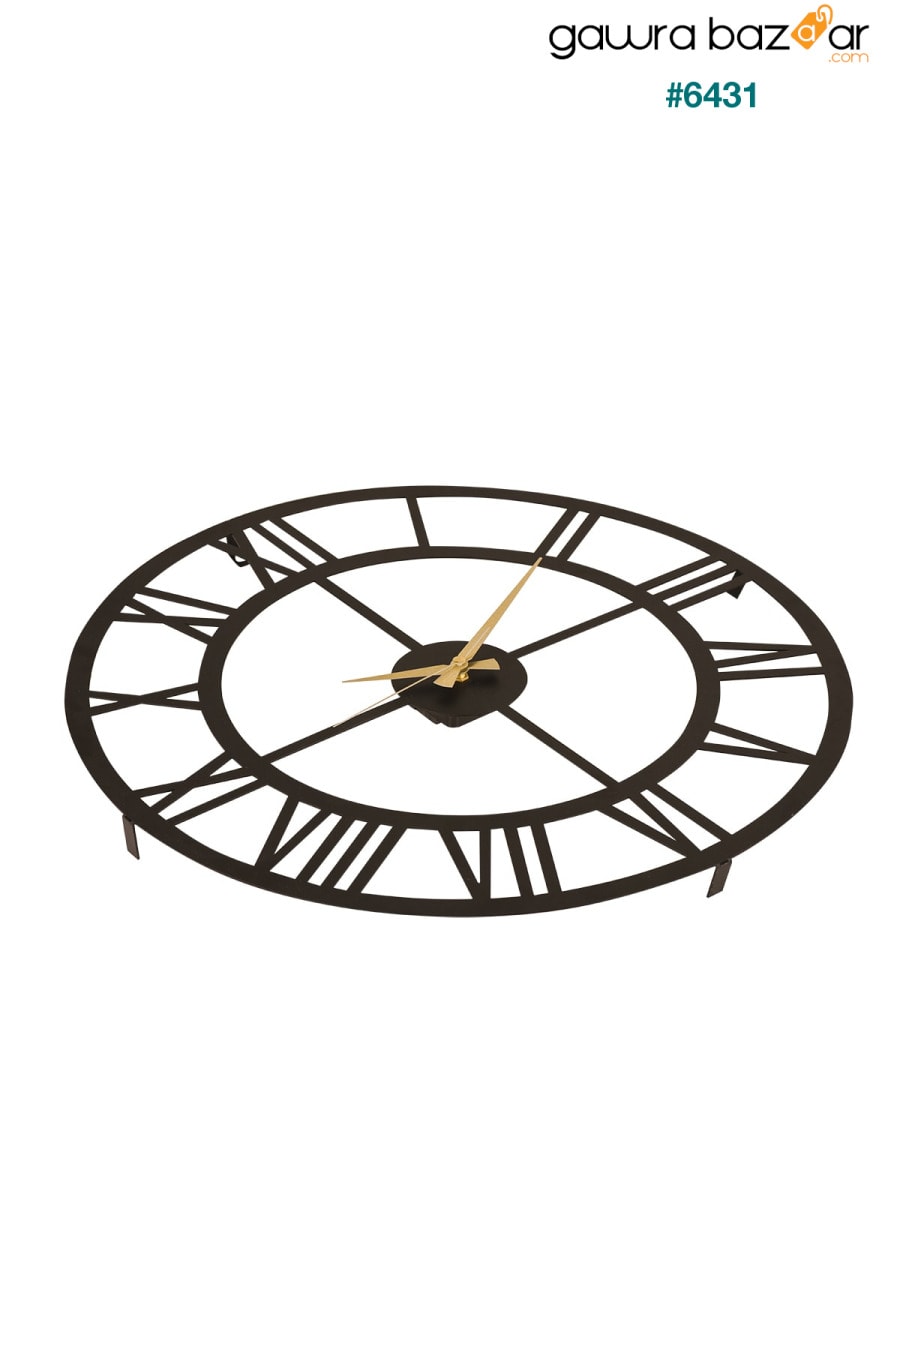 مويكا ساعة حائط معدنية بأرقام رومانية سوداء 50x50 سم Mds-50 Muyika Design 4